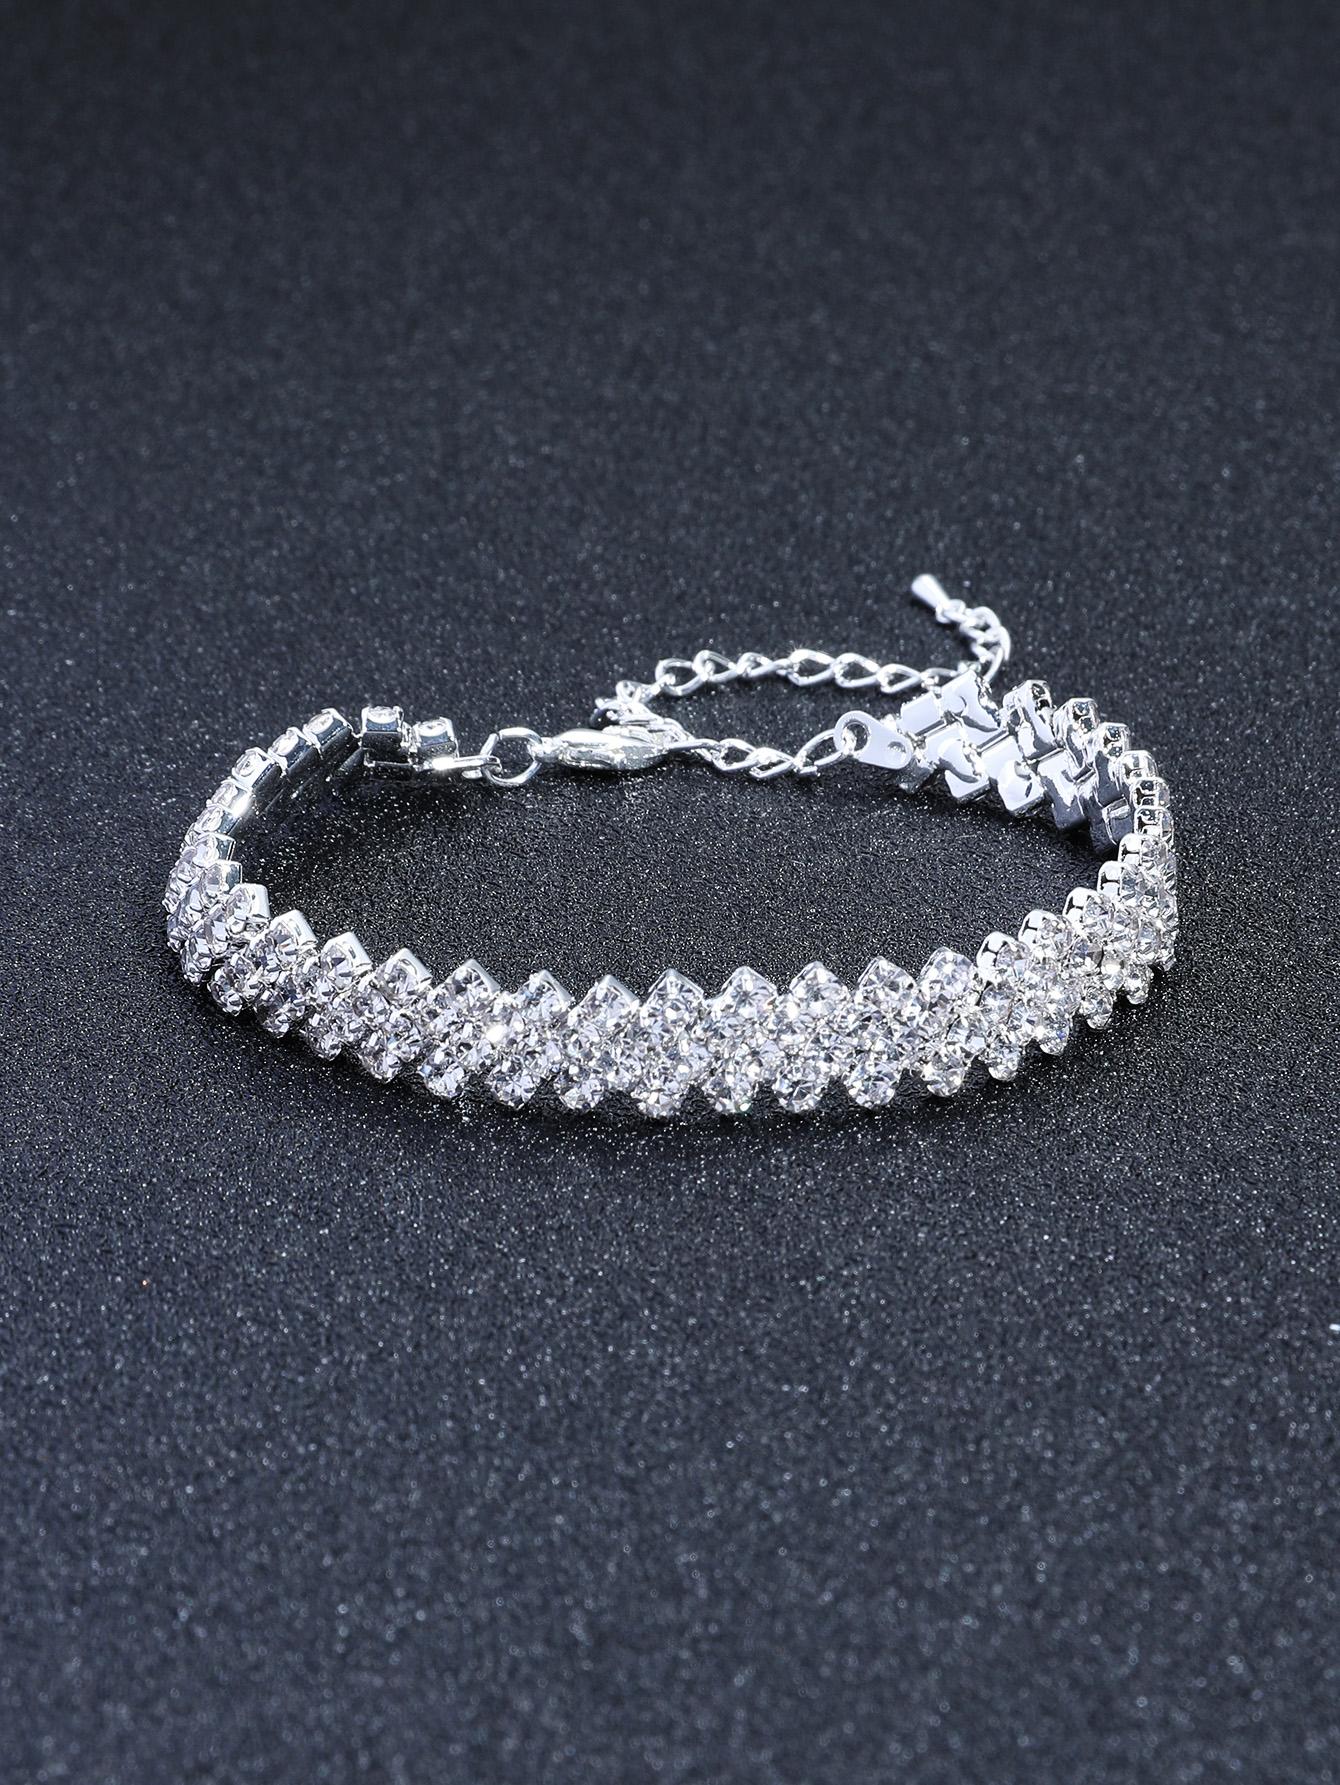 1pc Glamorous Rhinestone Decor Bracelet For Women For Gift - Negative Apparel